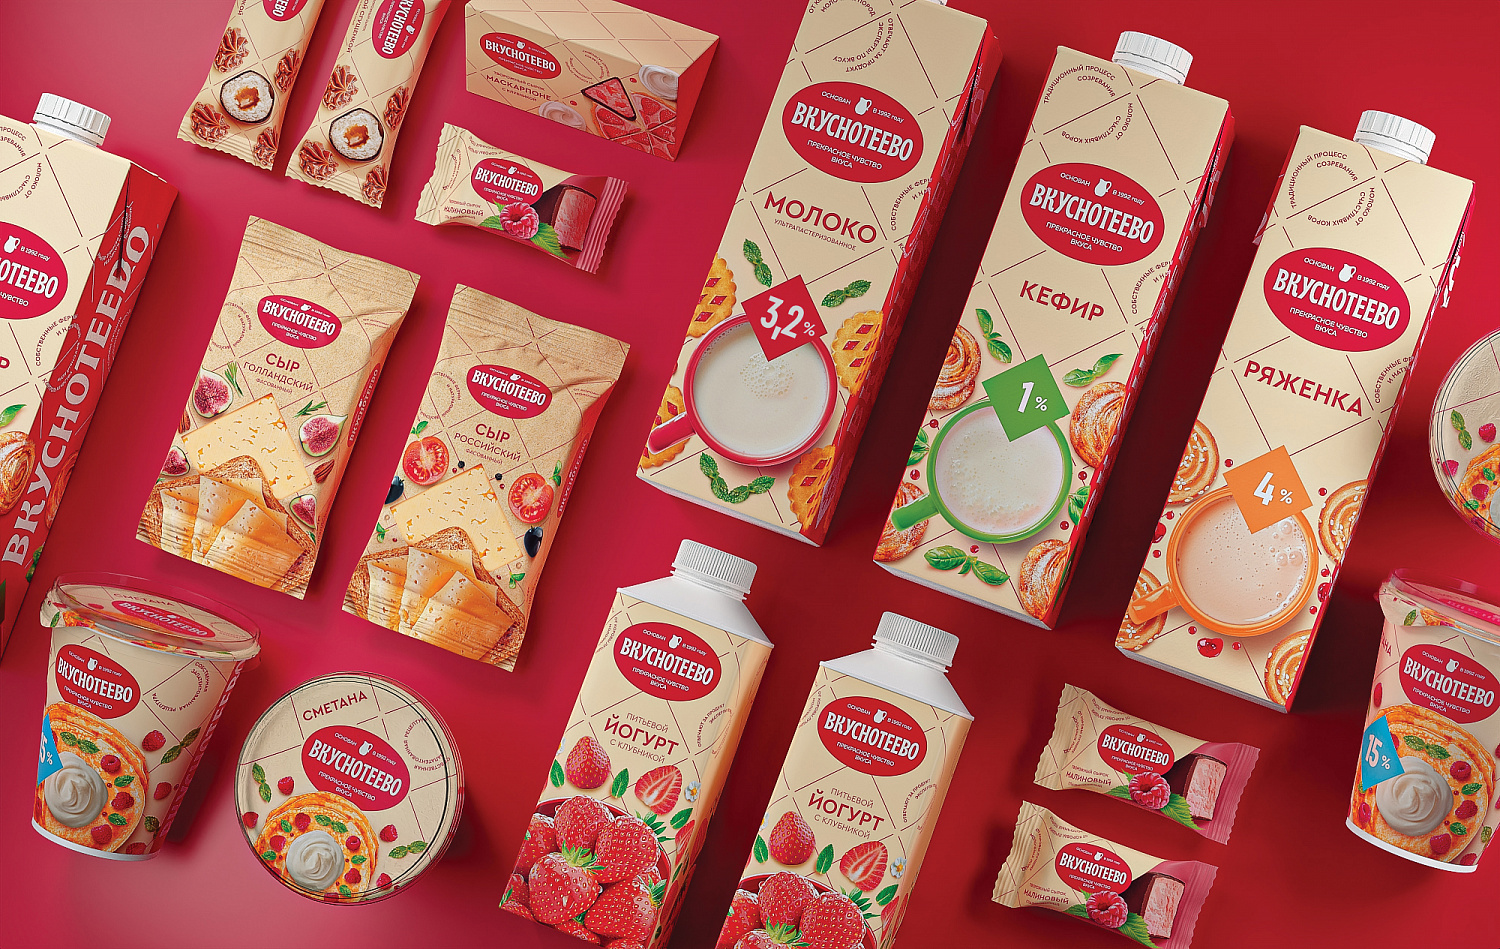 Вкуснотеево: фудстайлинг и визуальный стиль бренда молочных продуктов  - Портфолио Depot